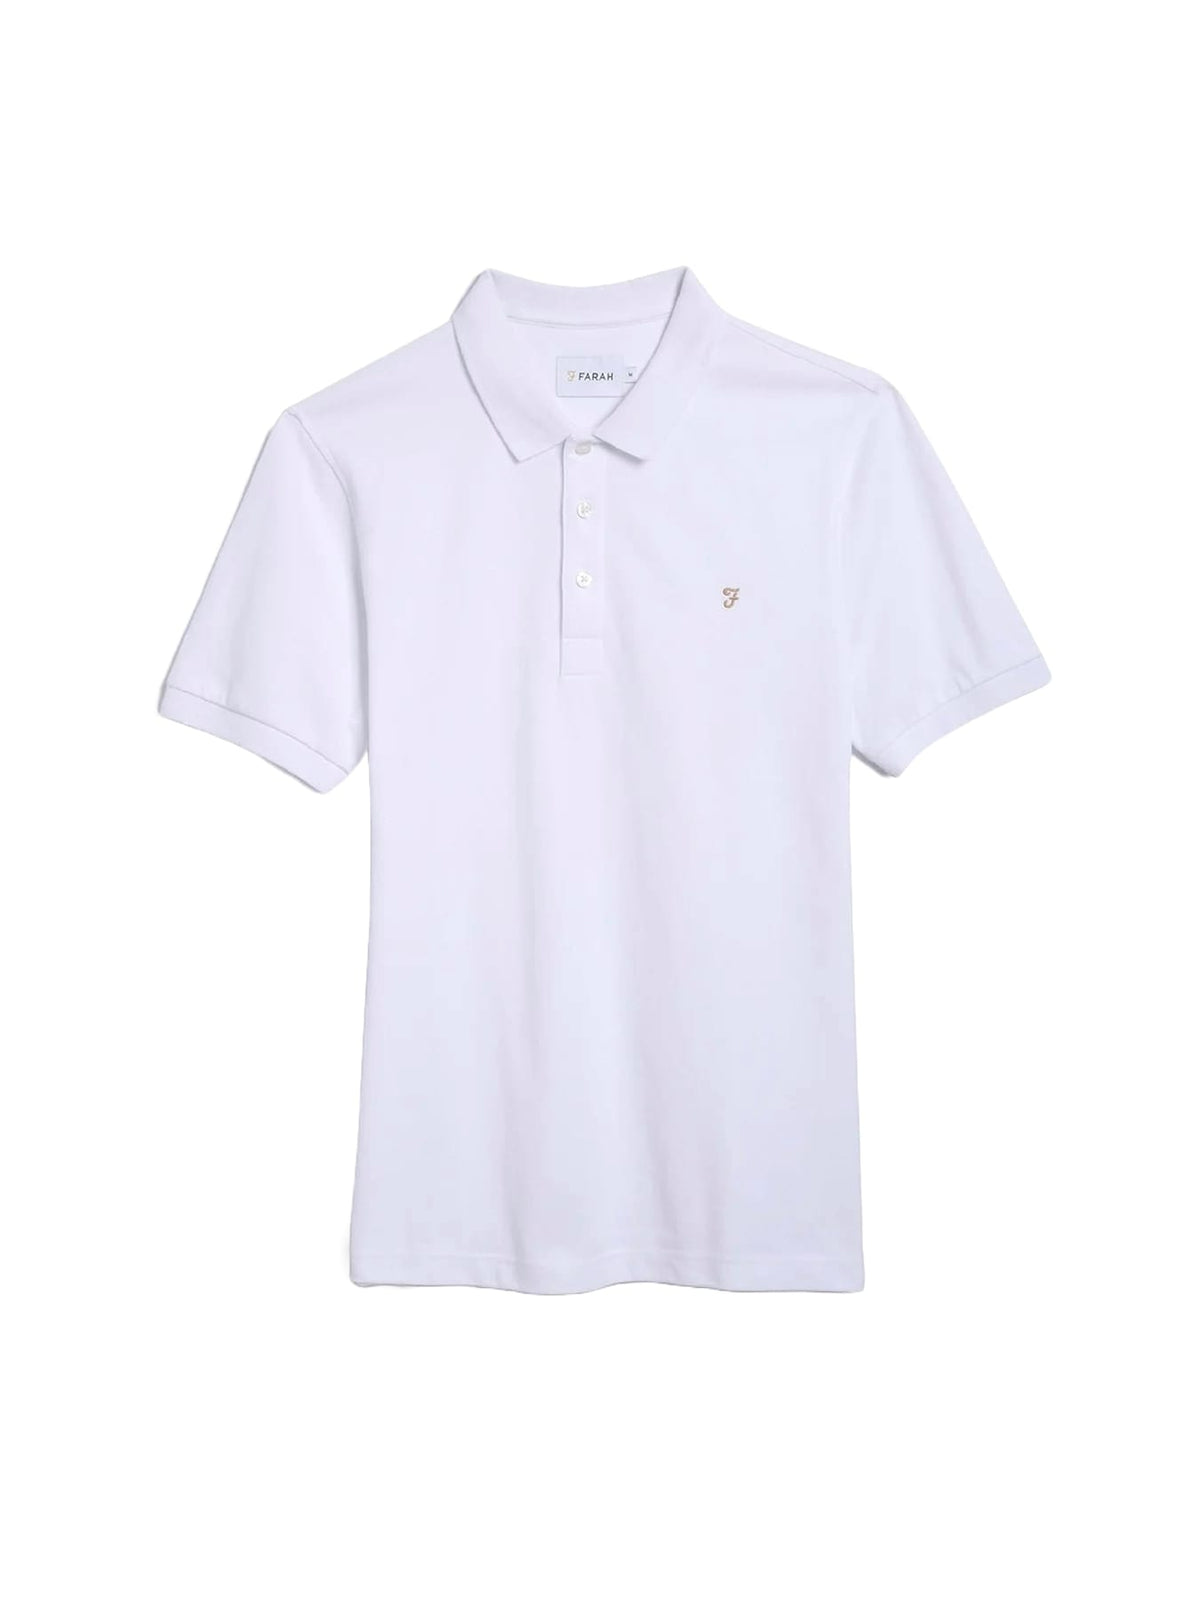 Farah Blanes Men's Polo Shirt White